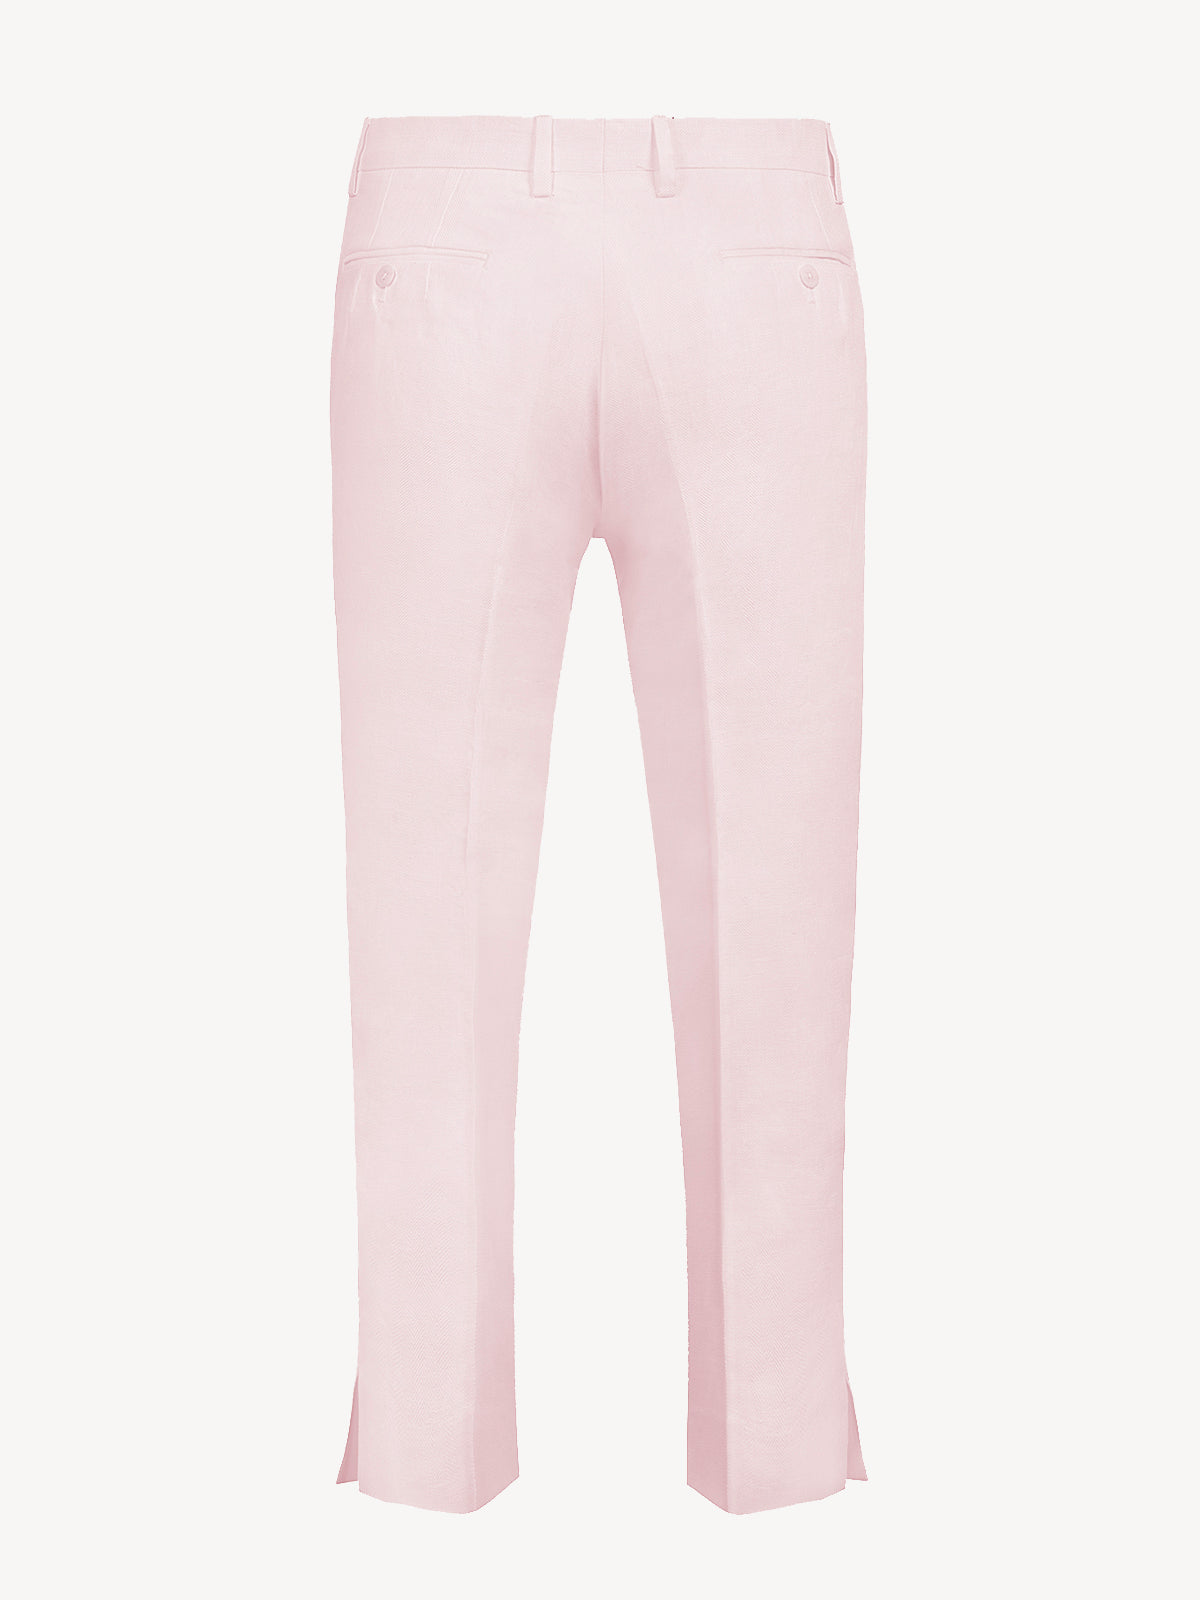 Pantalone New Capri  for woman 100% Capri pink linen pant back